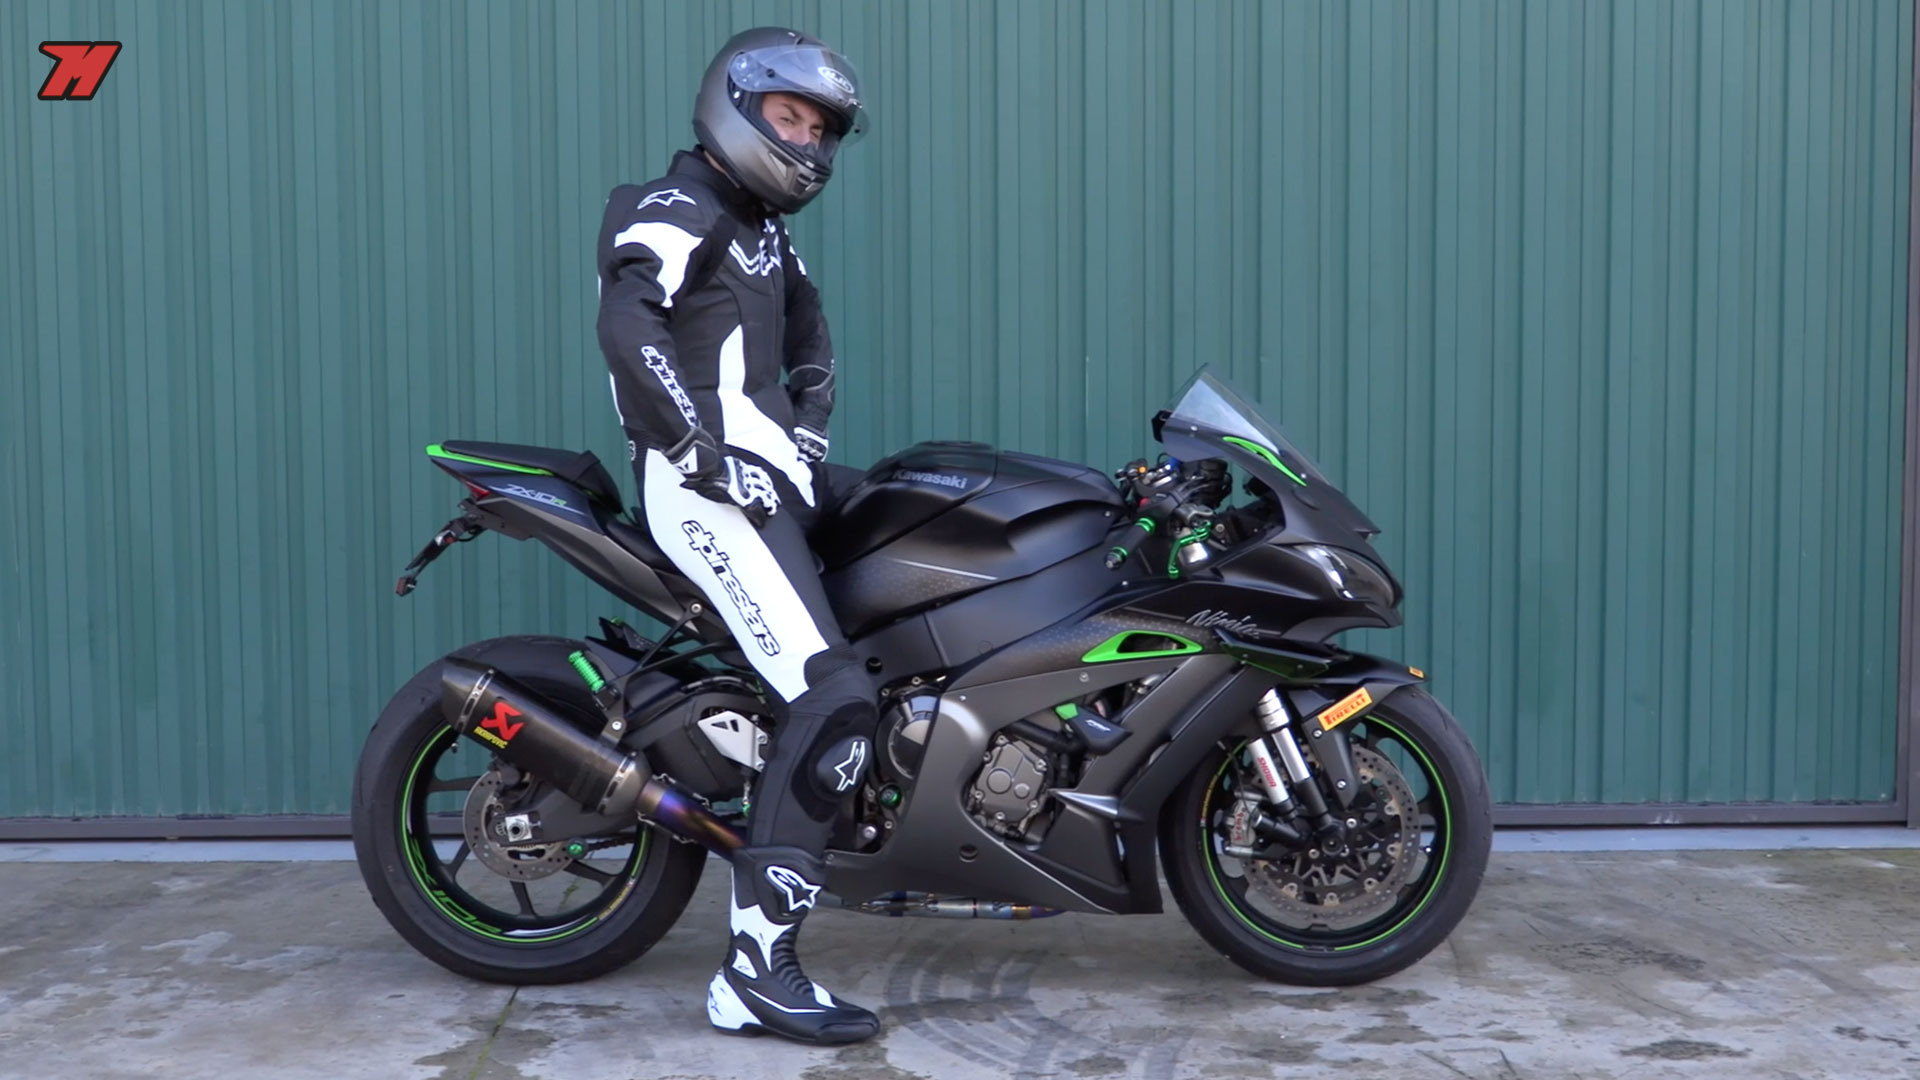 Équipement moto complet homme - Équipement moto